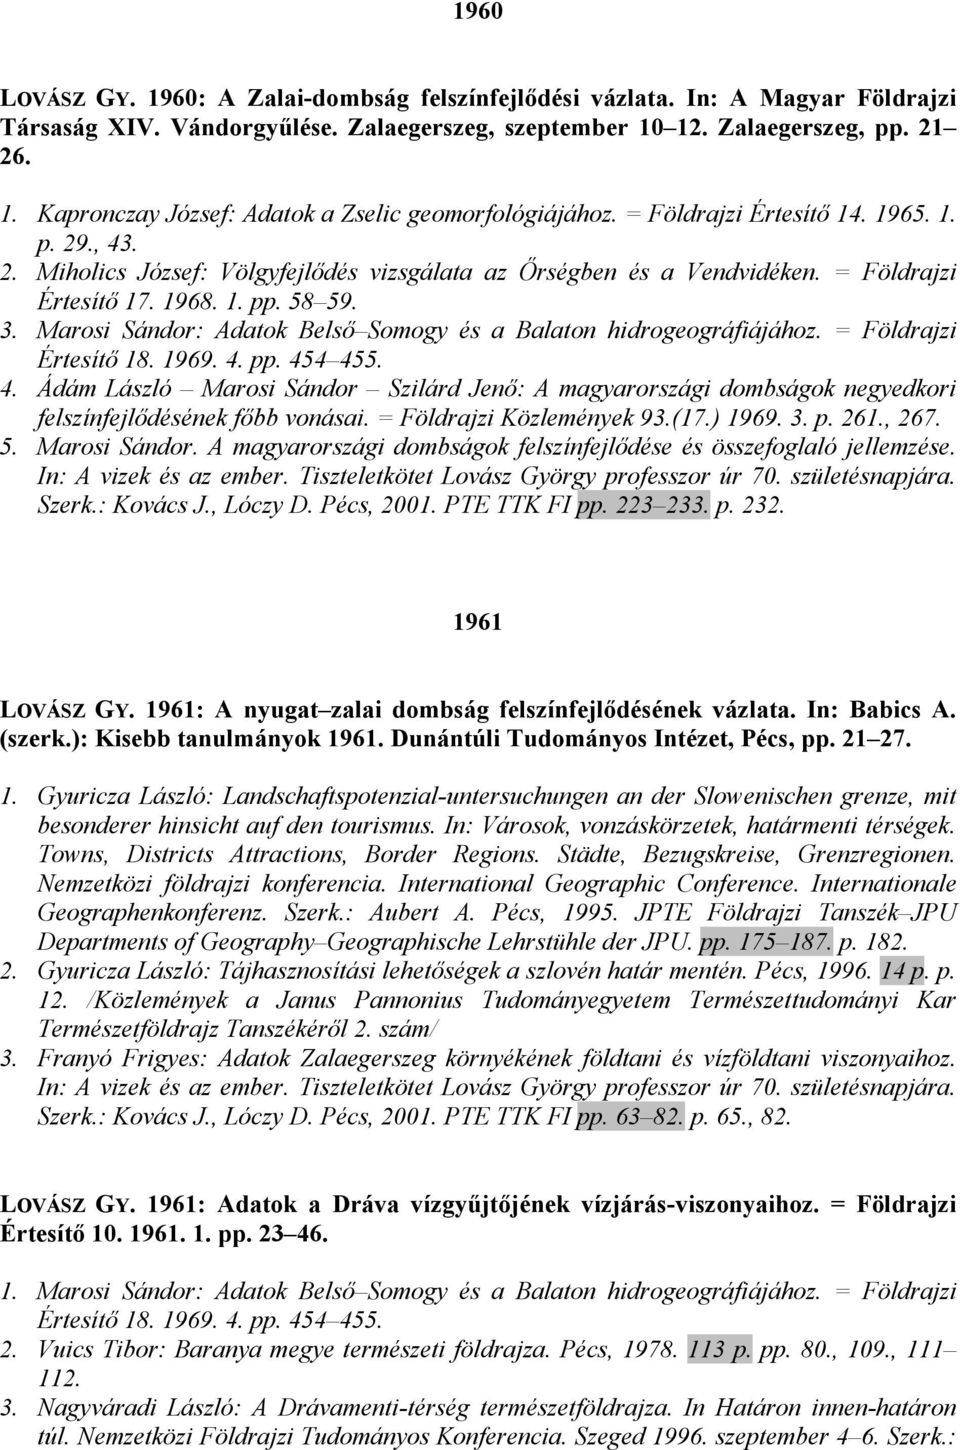 Marosi Sándor: Adatok Belsı Somogy és a Balaton hidrogeográfiájához. = Földrajzi Értesítı 18. 1969. 4.